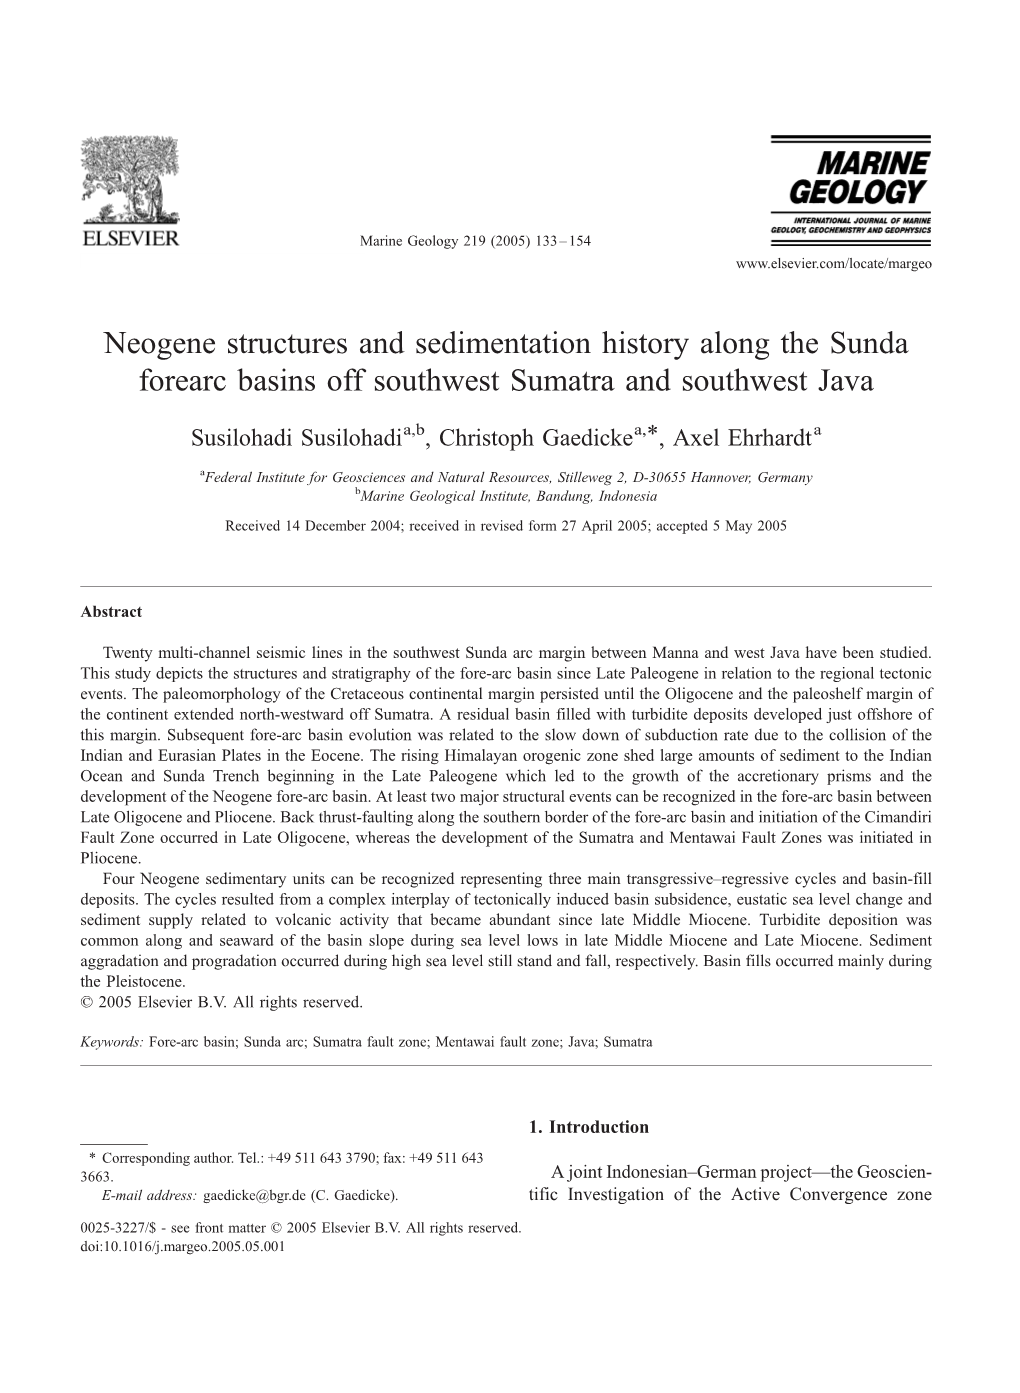 Neogene Structures and Sedimentation History Along the Sunda Forearc Basins Off Southwest Sumatra and Southwest Java